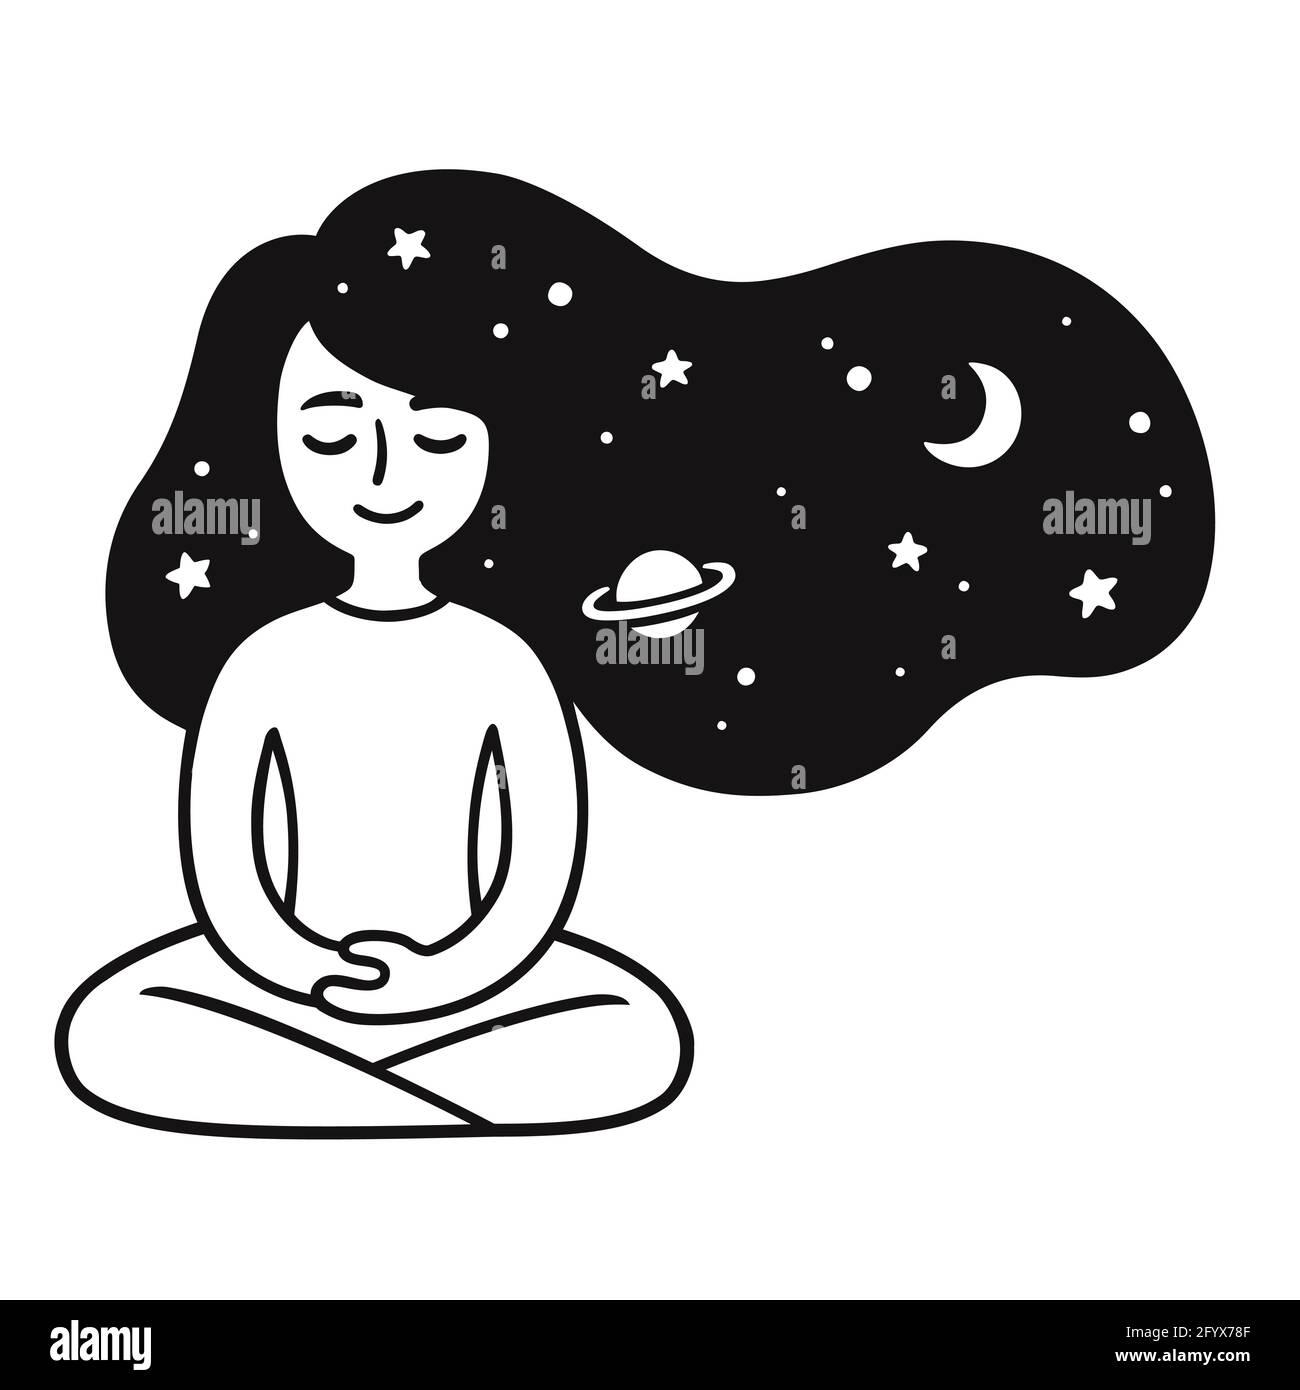 Junge Frau meditiert mit Sternen und Galaxienhaaren. Nettes Mädchen Meditation Doodle. Einfache Schwarz-Weiß-Zeichnung, Vektorgrafik. Stock Vektor